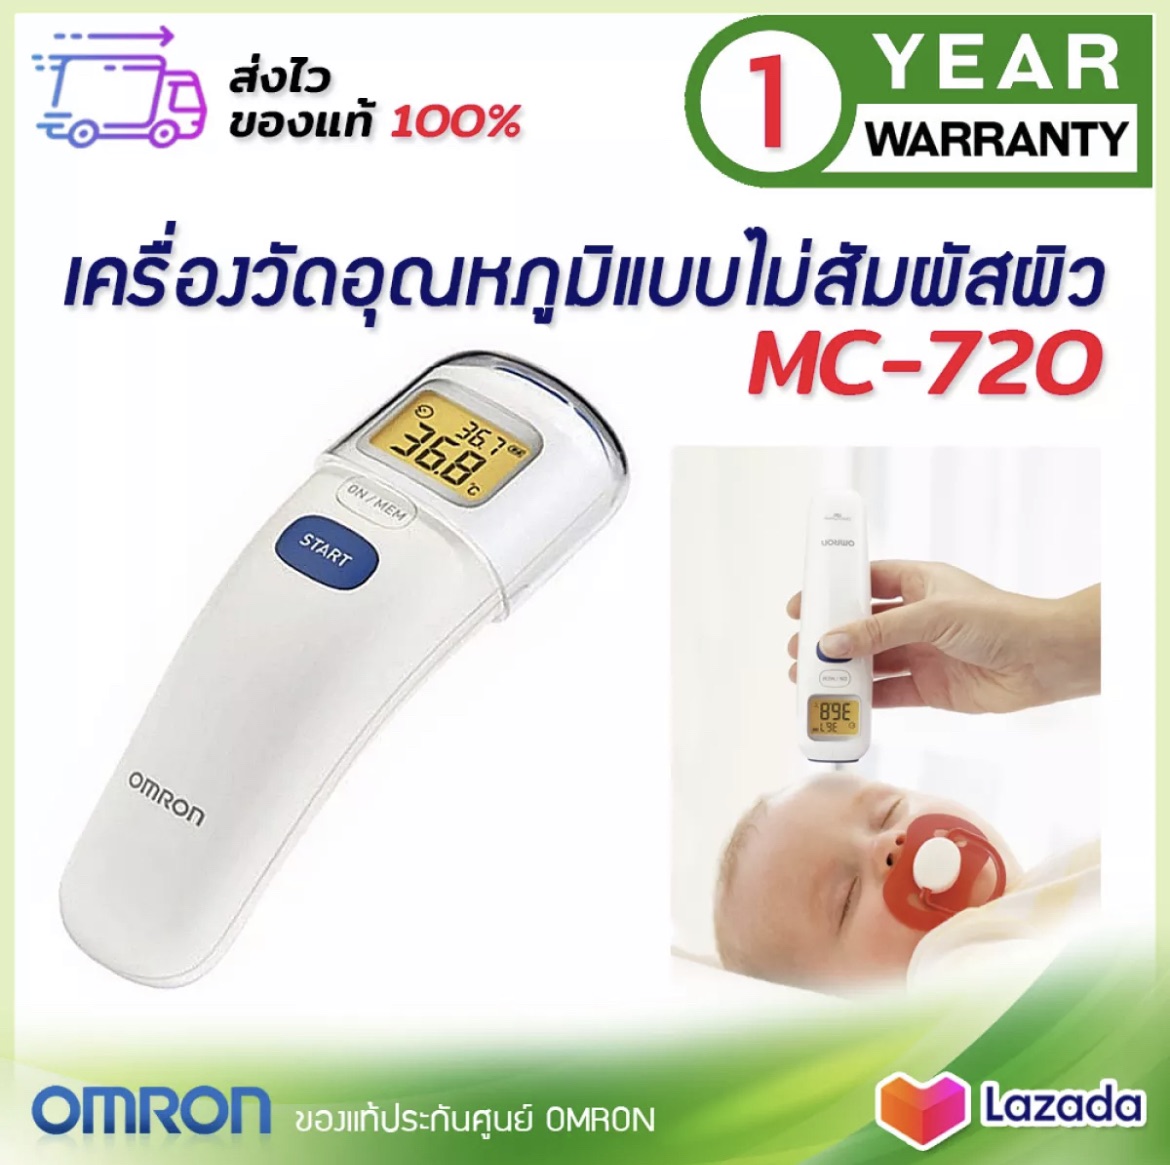 OMRON Thermometer MC-720 เทอร์โมมิเตอร์วัดไข้ทางหน้าผาก เครื่องวัดไข้แบบไม่สัมผัสผิว เครื่องวัดอุณหภูมิ MC720 รับประกันศูนย์ออมรอน 1 ปี